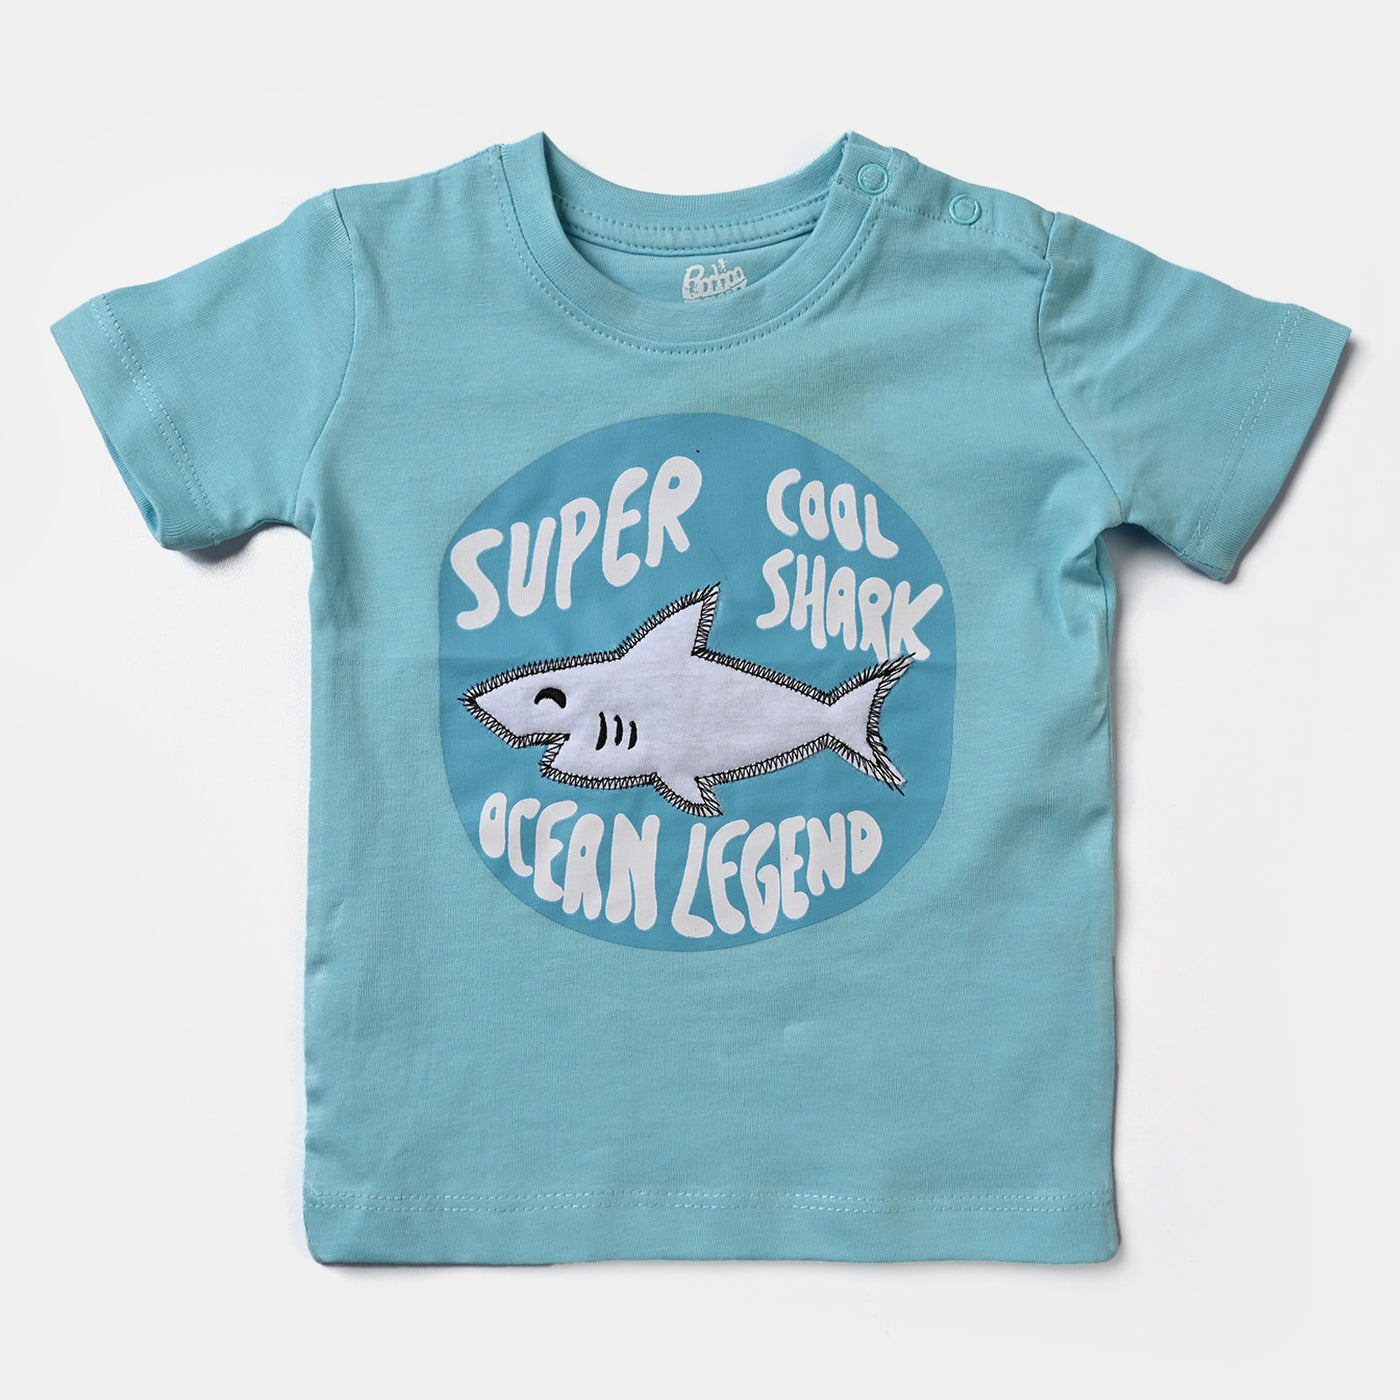 Infant Boys Cotton Jersey T-Shirt Super Cool Shark-T. Breeze